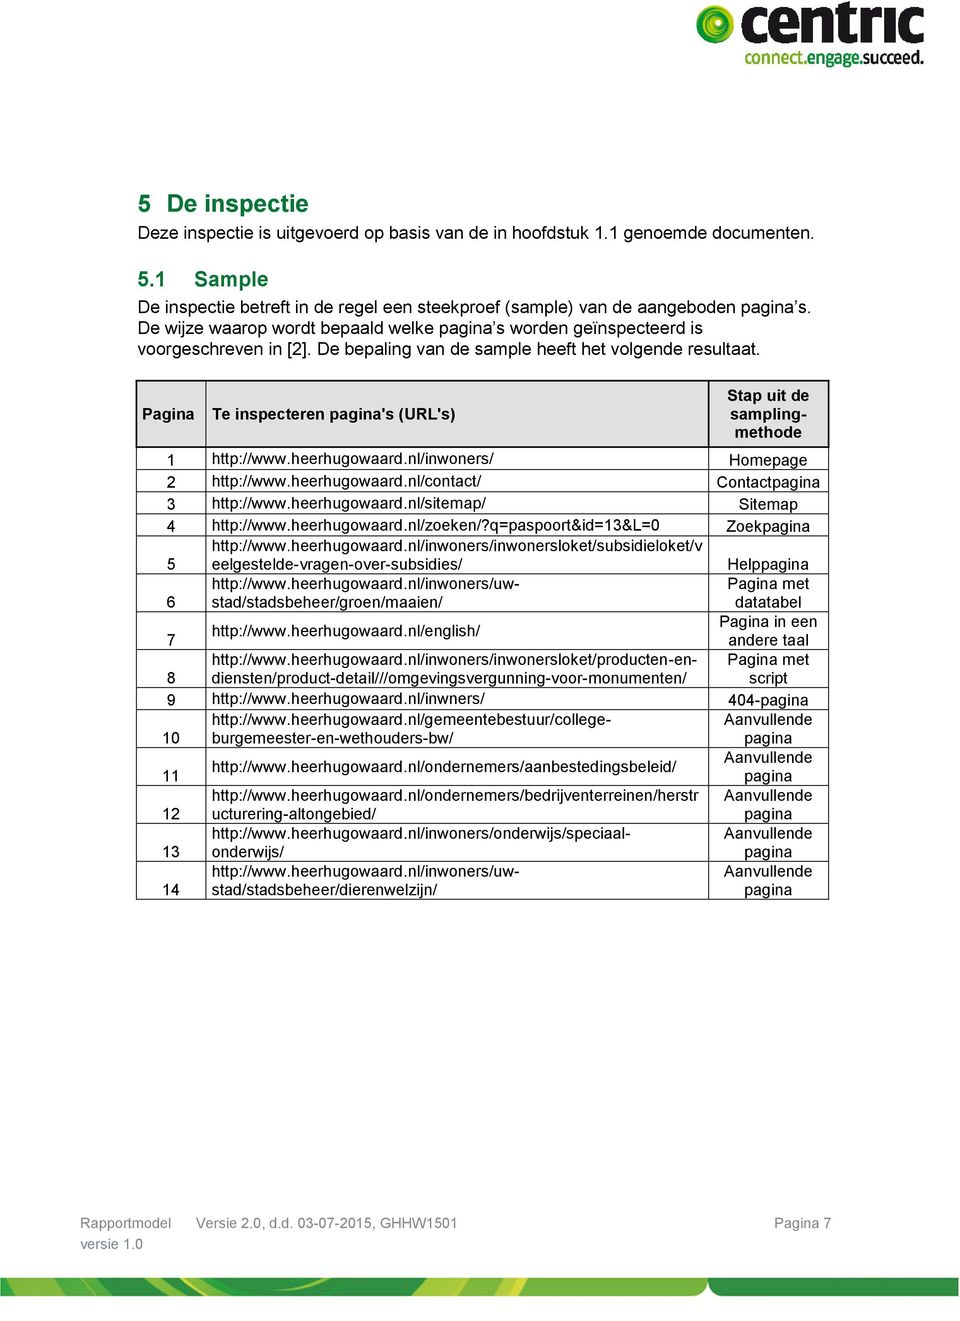 Pagina Te inspecteren pagina's (URL's) Stap uit de samplingmethode 1 http://www.heerhugowaard.nl/inwoners/ Homepage 2 http://www.heerhugowaard.nl/contact/ Contactpagina 3 http://www.heerhugowaard.nl/sitemap/ Sitemap 4 http://www.